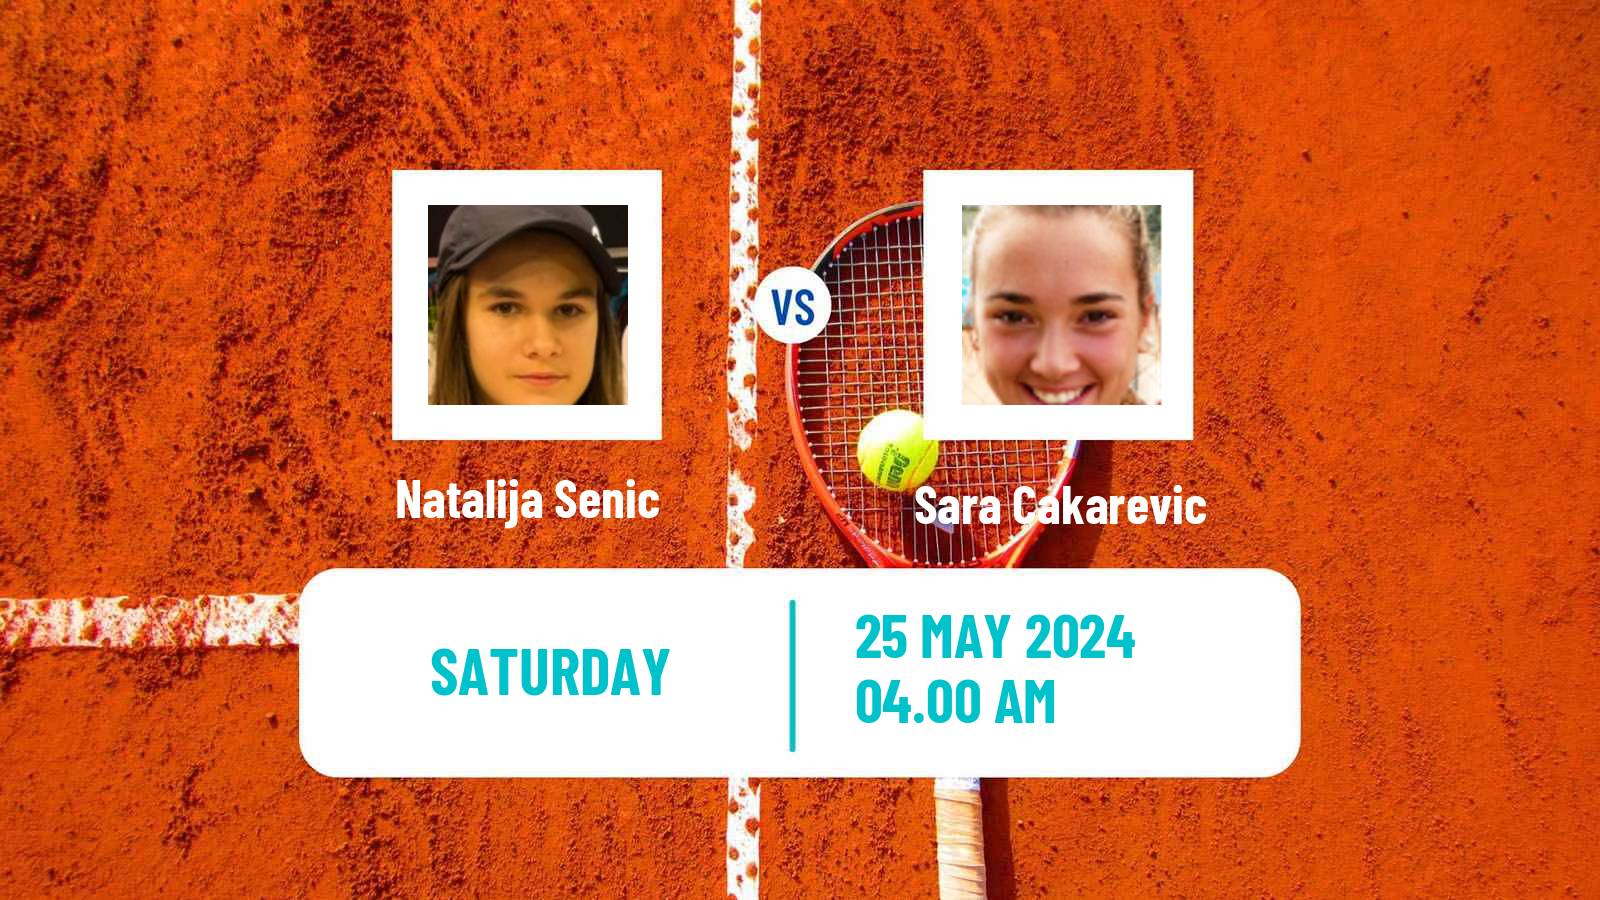 Tennis ITF W35 Kursumlijska Banja Women Natalija Senic - Sara Cakarevic